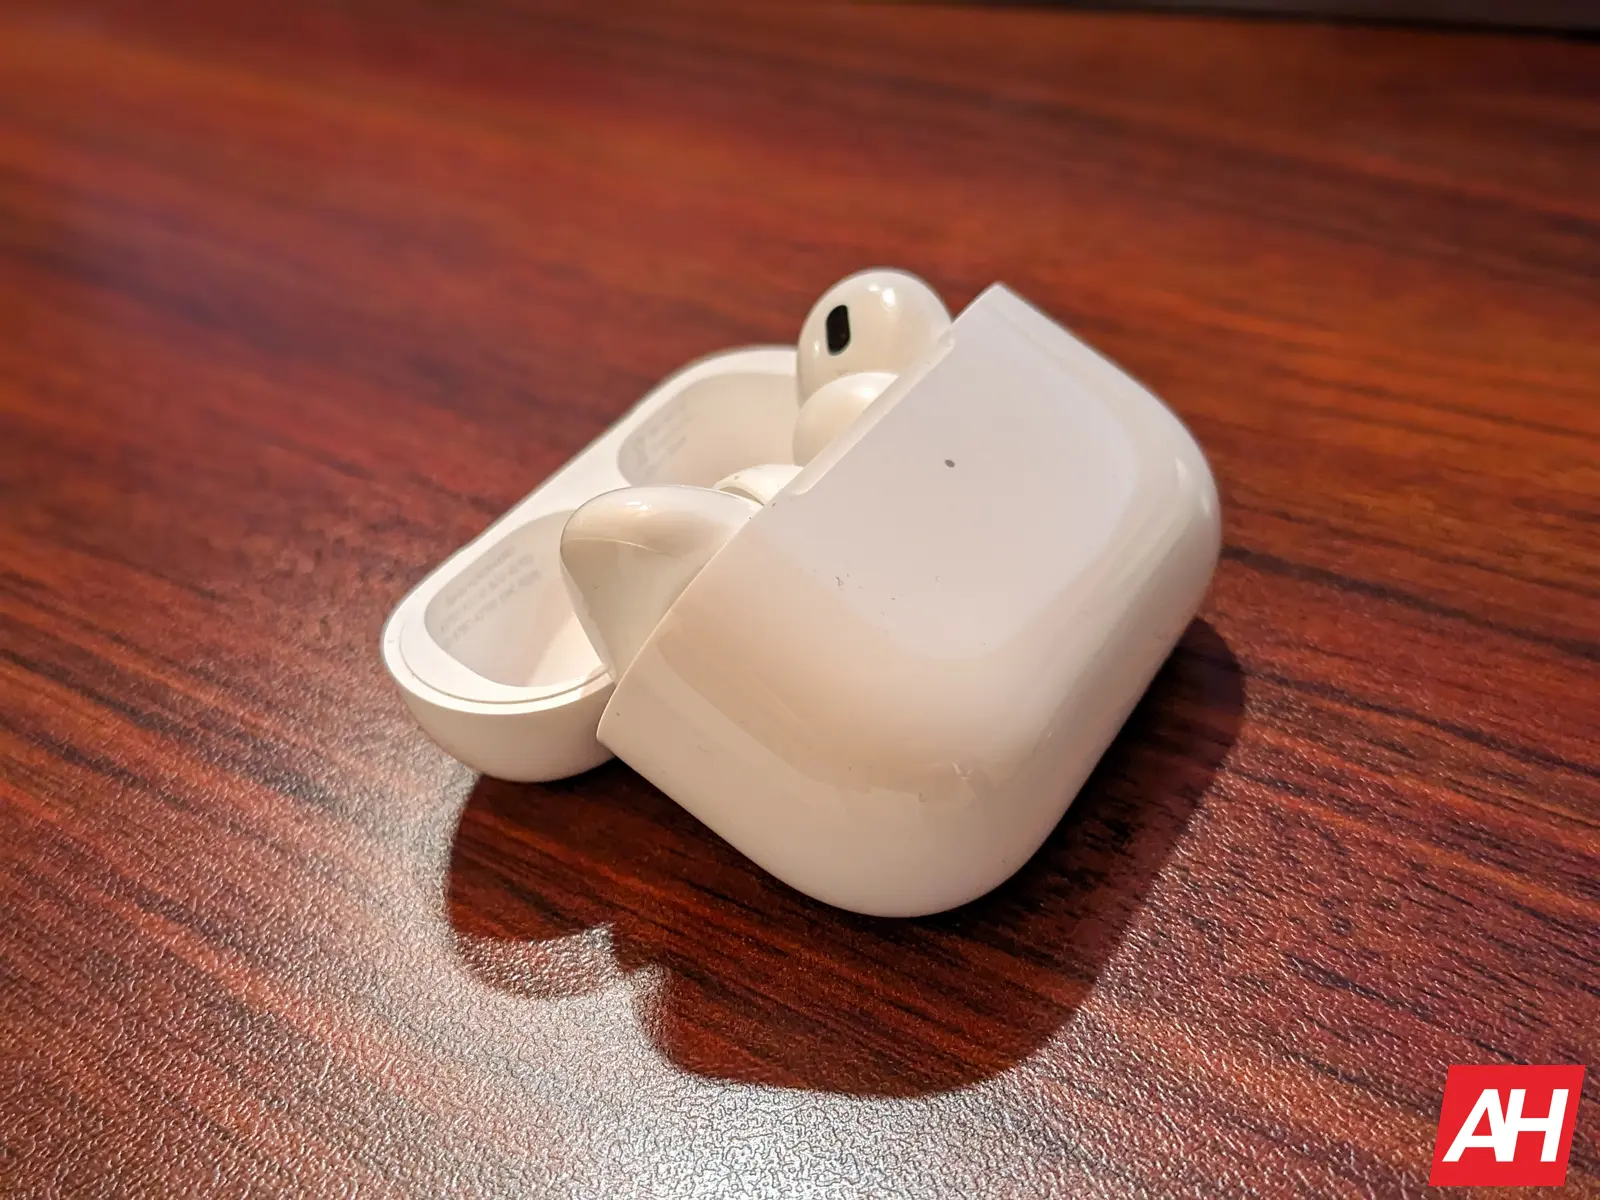 Consigue los nuevos Apple AirPods Pro con USB-C por solo $199